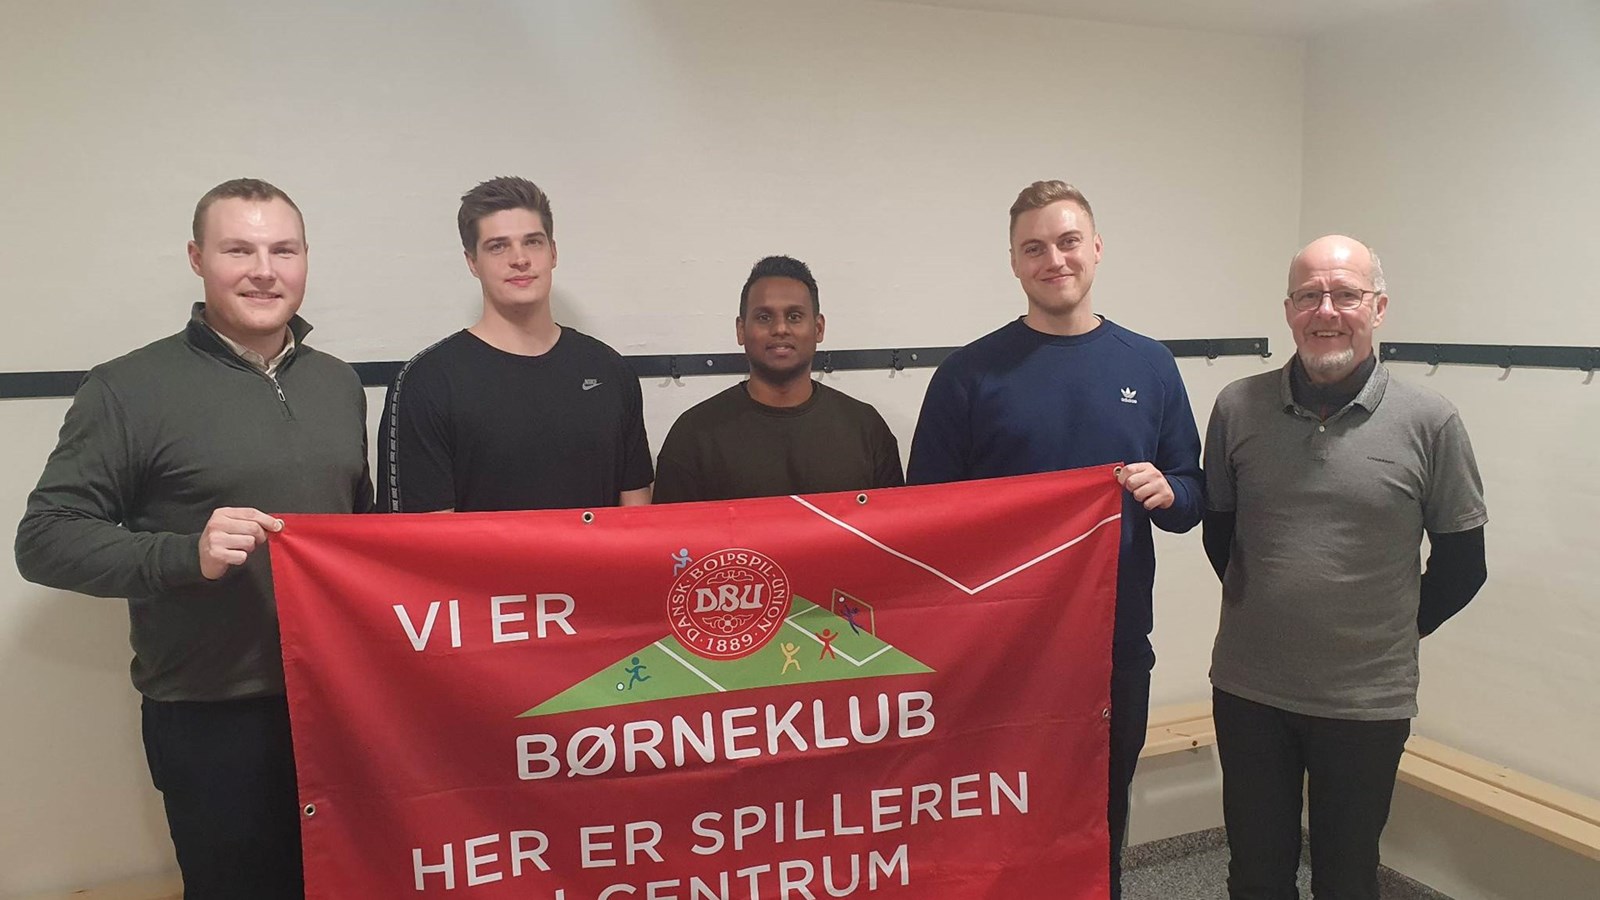 DBU Jylland udbygger børneklubrådgiver-korpset med fem nye ansigter